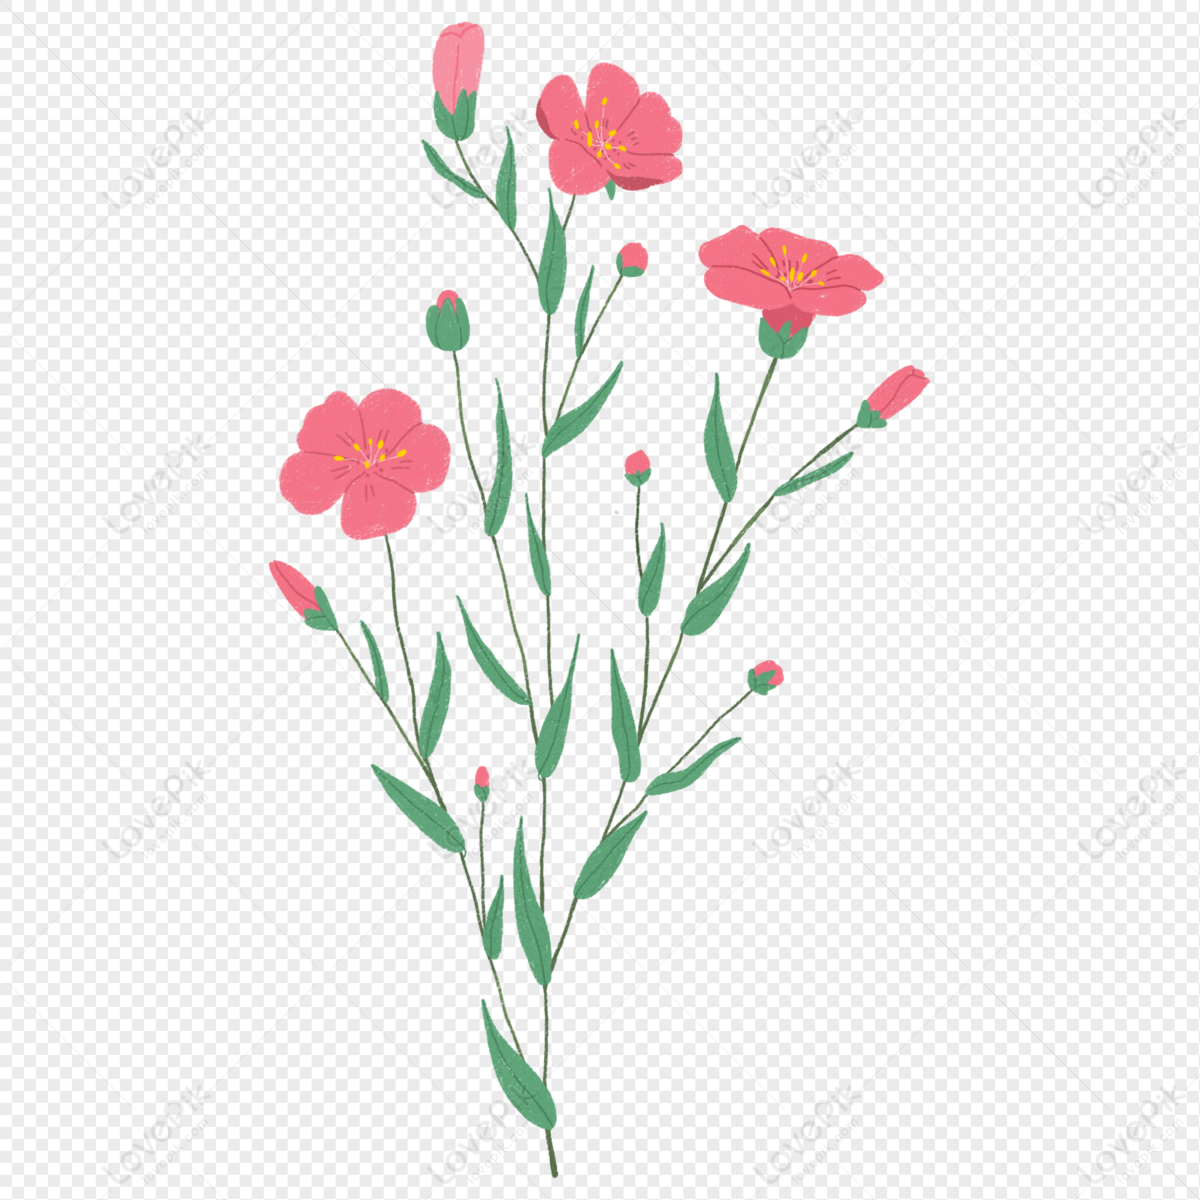 Pin by d._.hruv on FLOWER | Flower art images, Flower art, Flower drawing